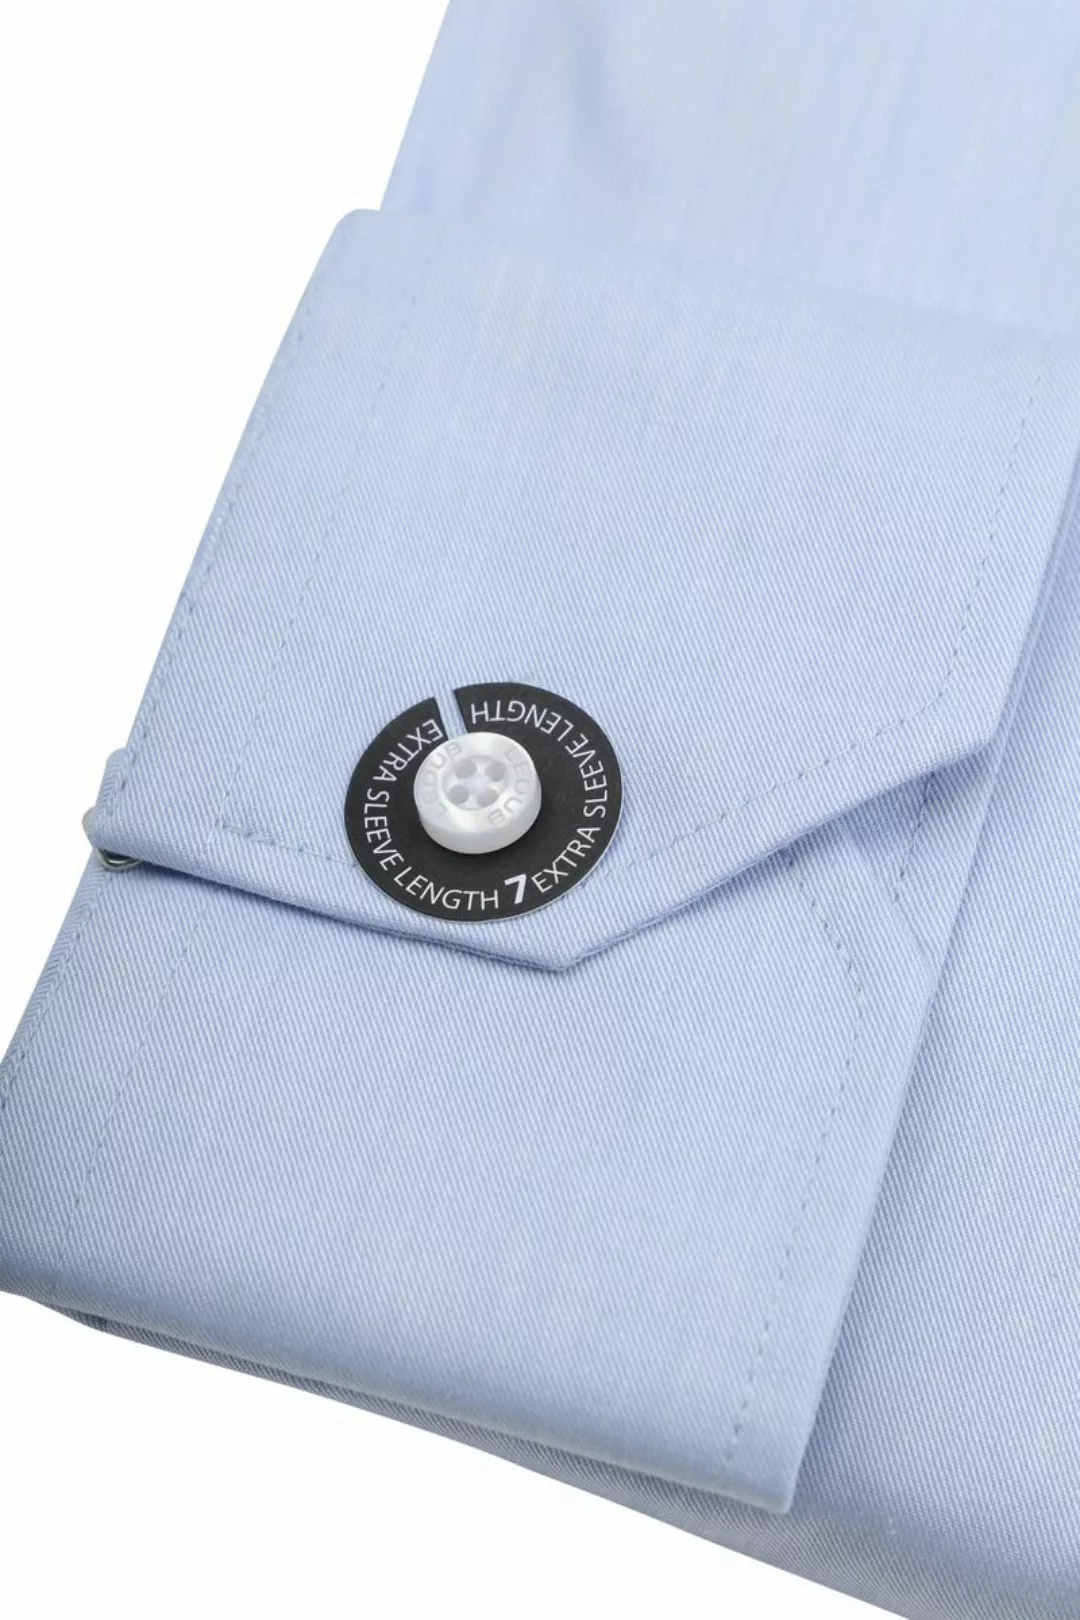 Ledub Hemd Hellblau Brusttassche Extra Long Sleeves - Größe 42 günstig online kaufen